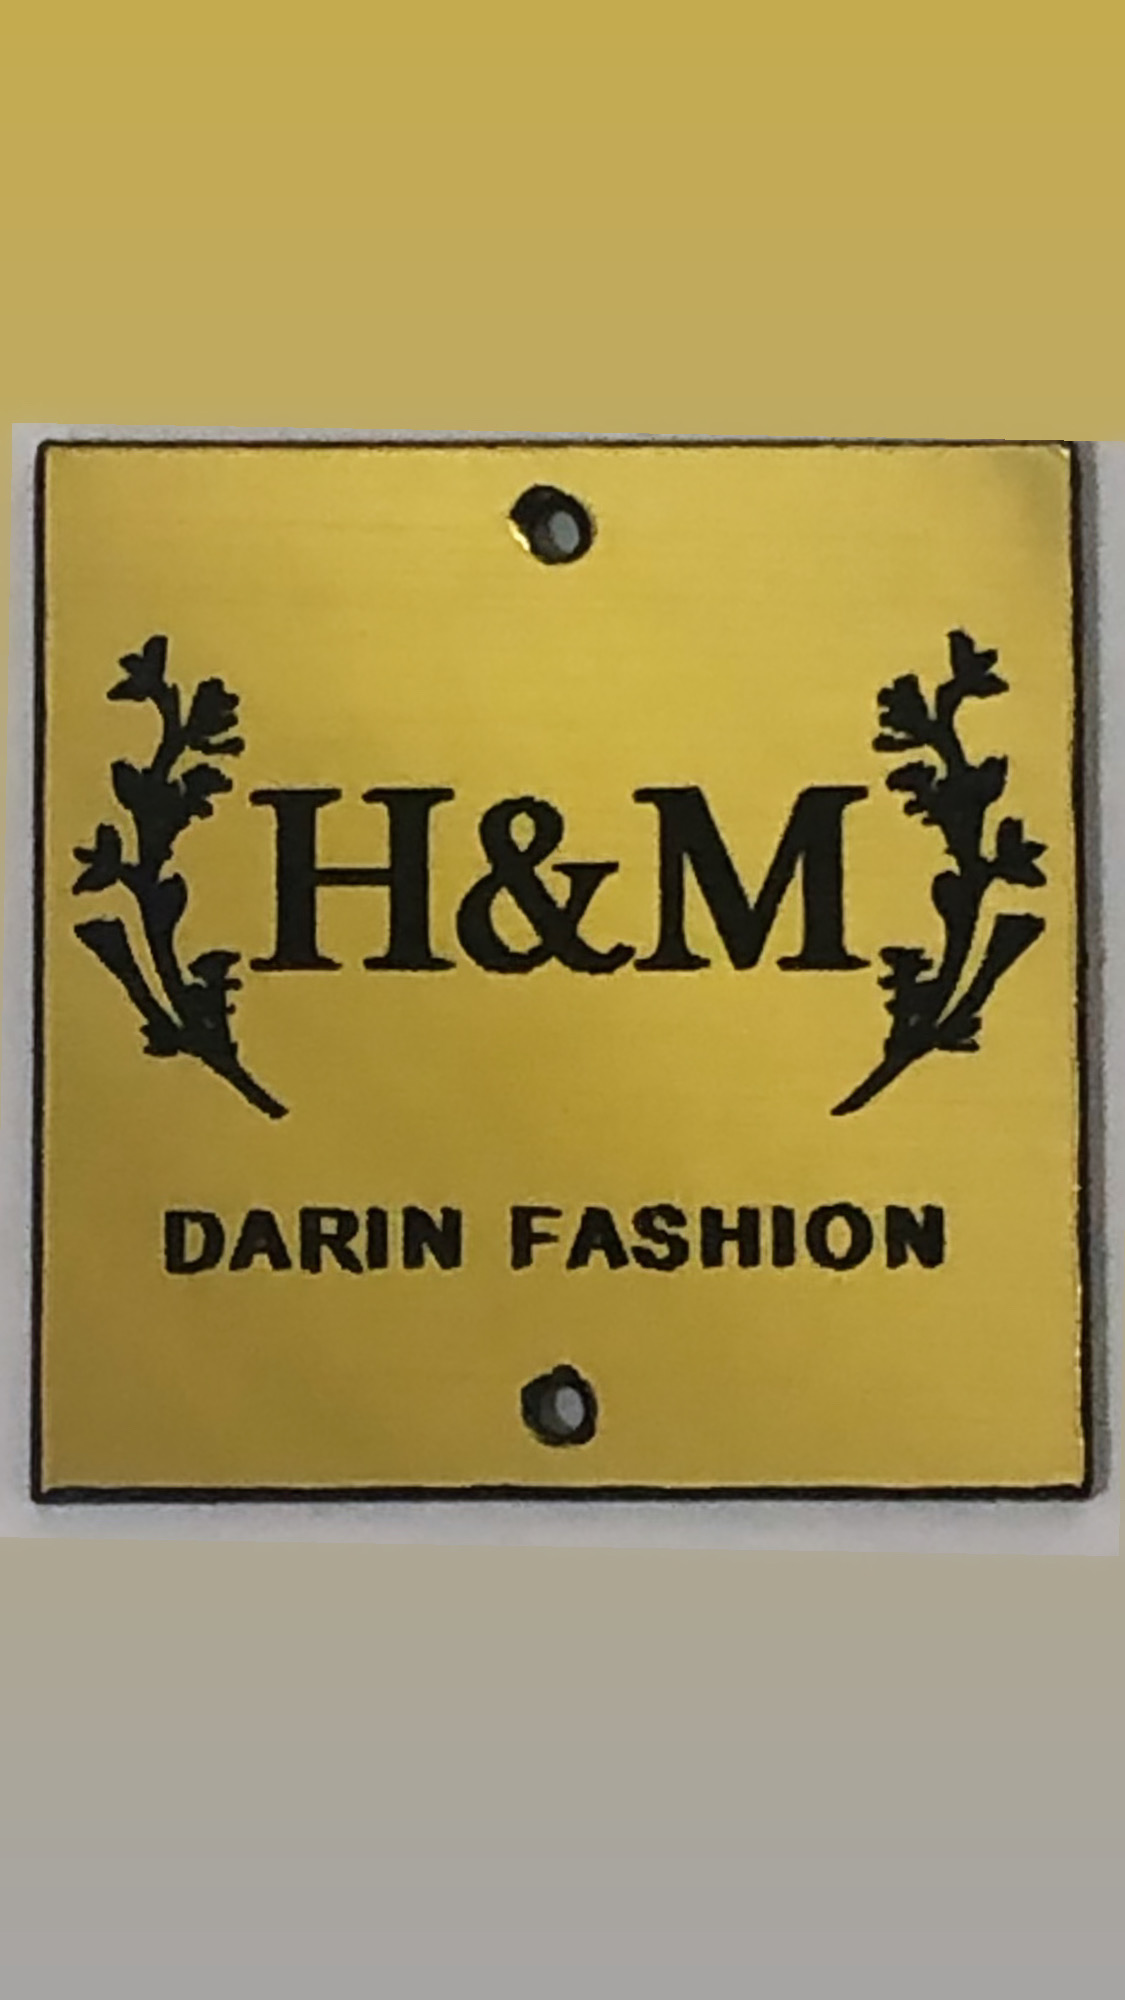 Darin fashion